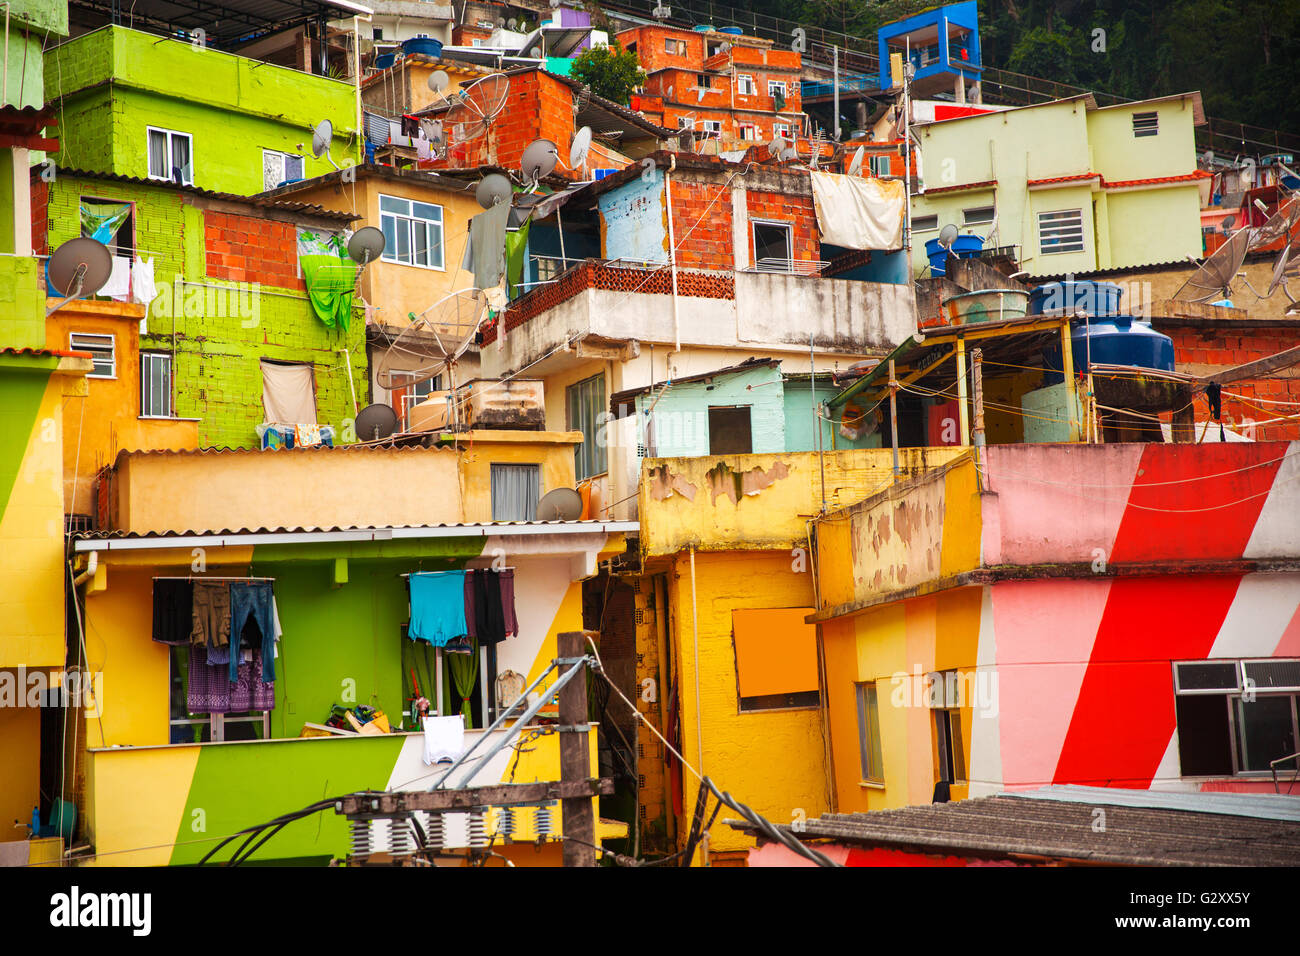 Des bâtiments colorés favela de Rio de Janeiro Brésil Banque D'Images